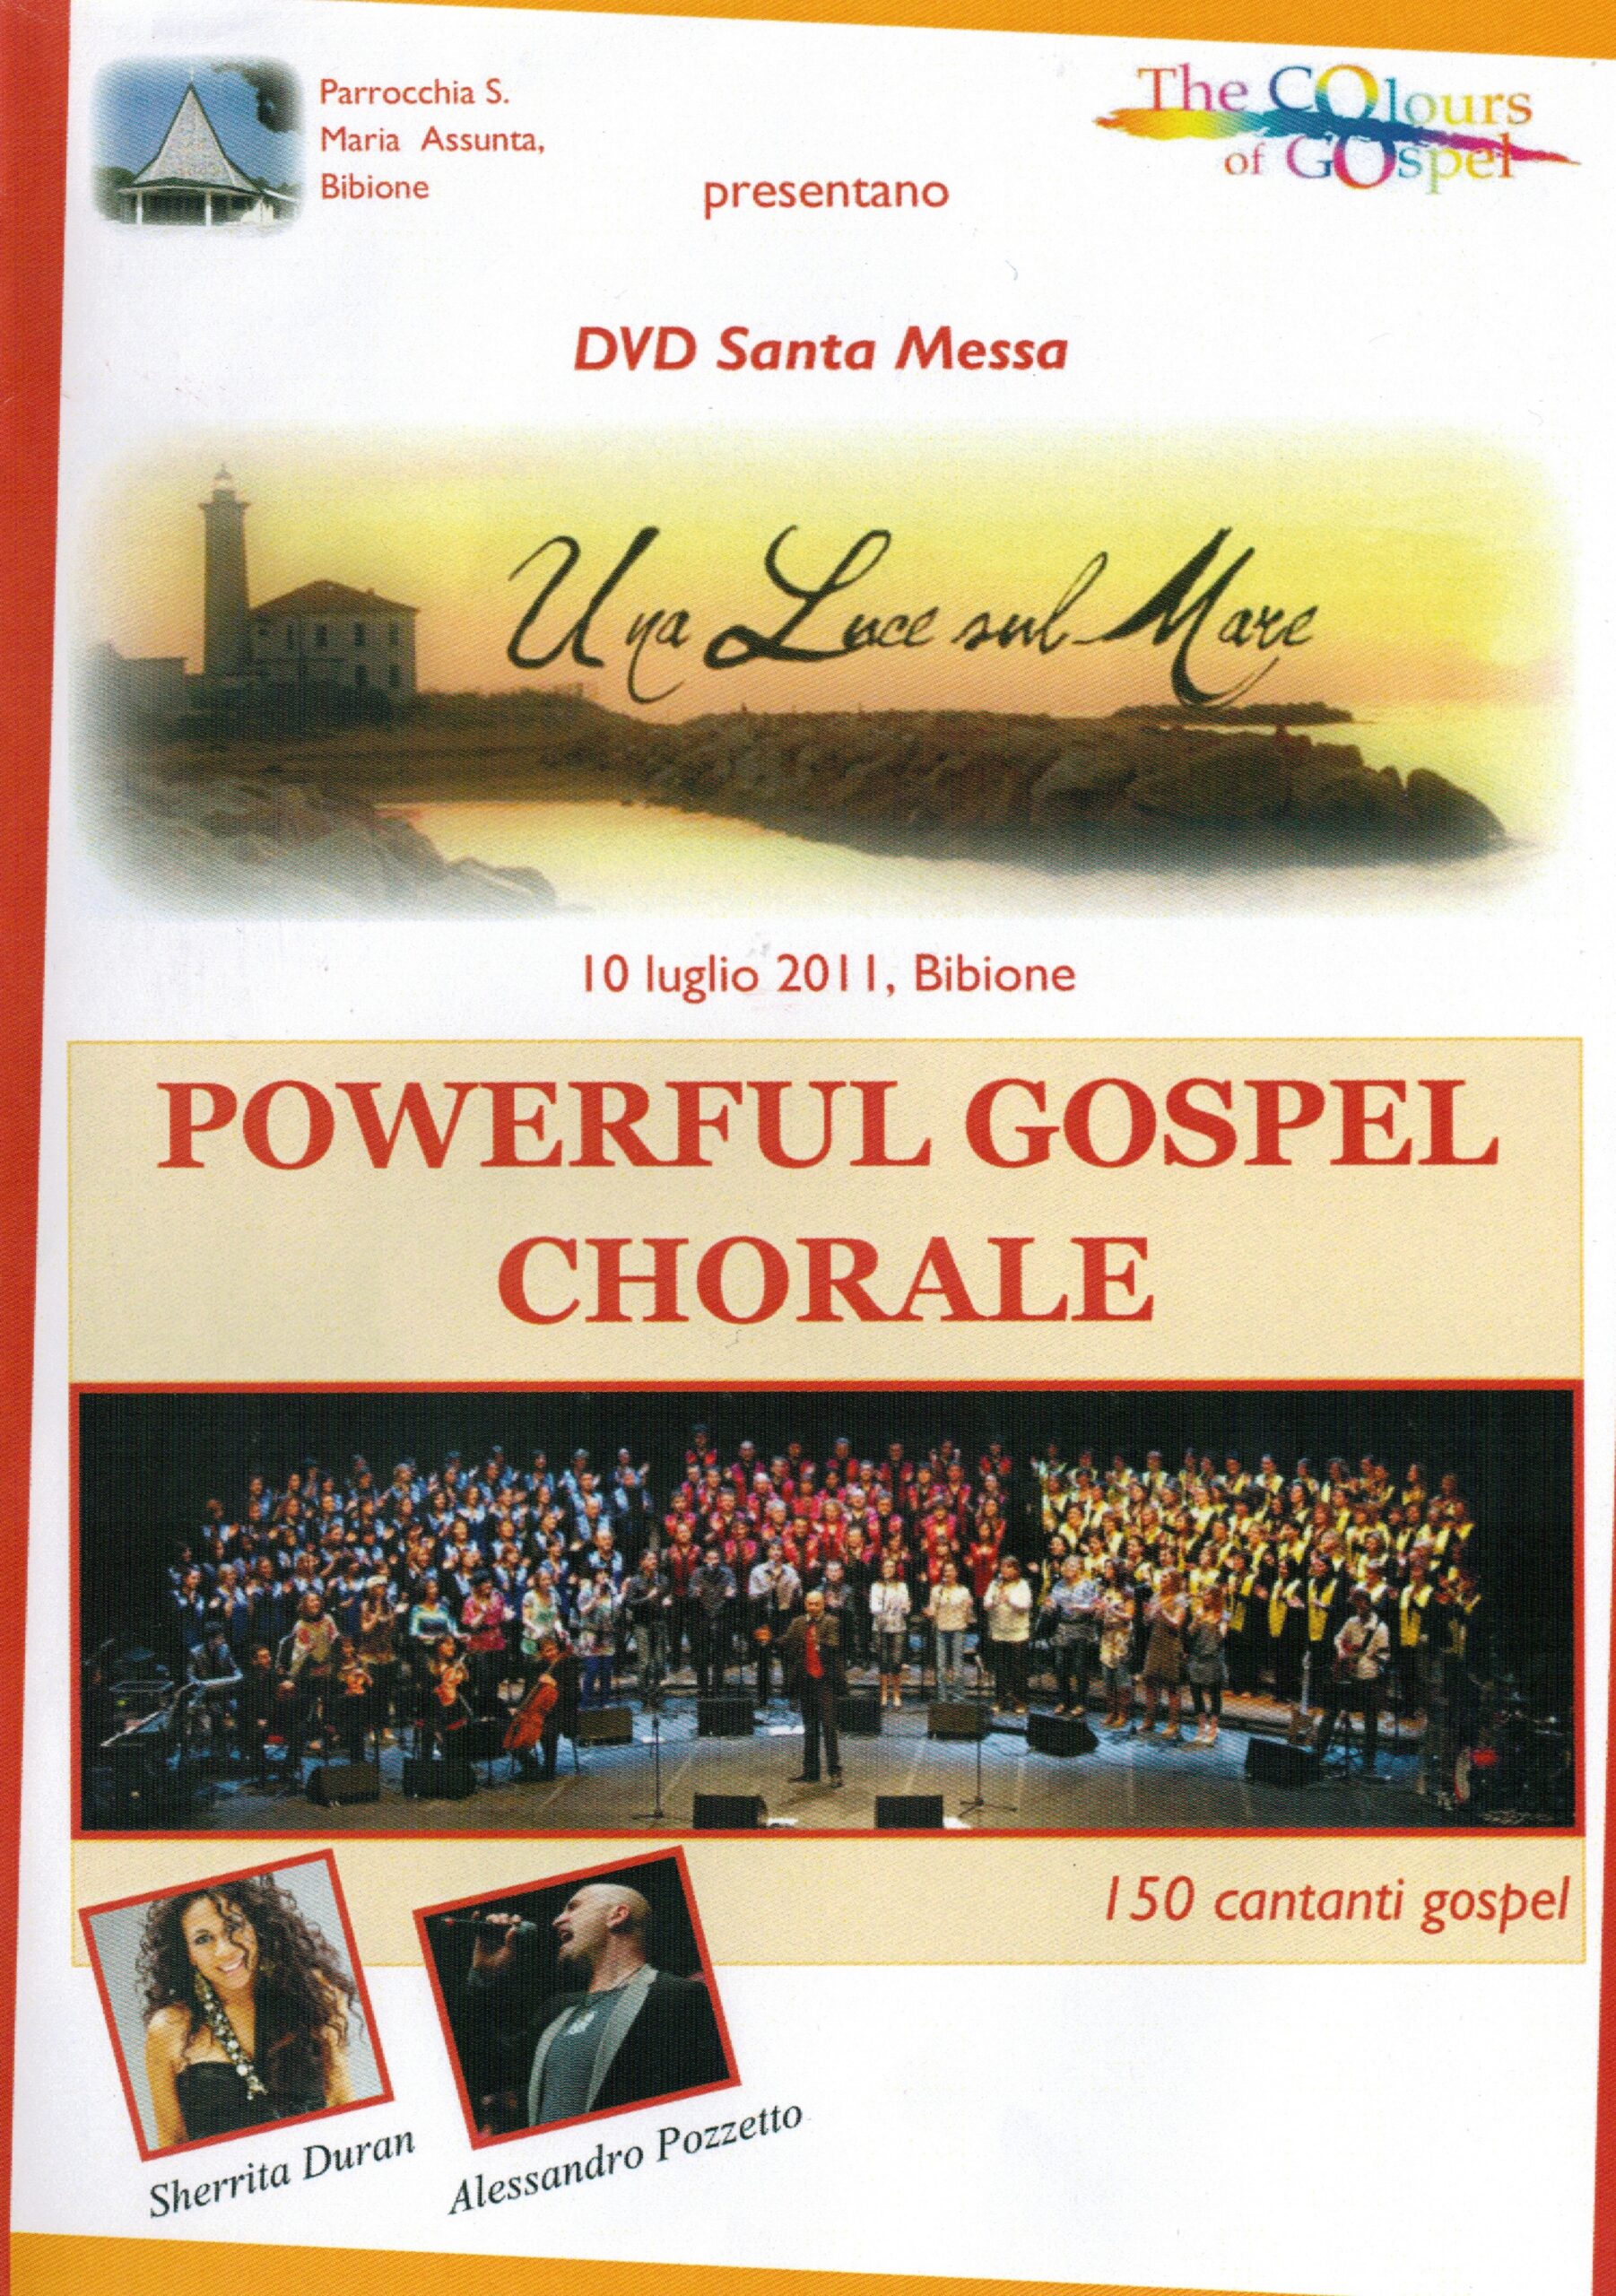 Powerful Gospel Chorale in uscita il Dvd “Una Luce sul Mare”